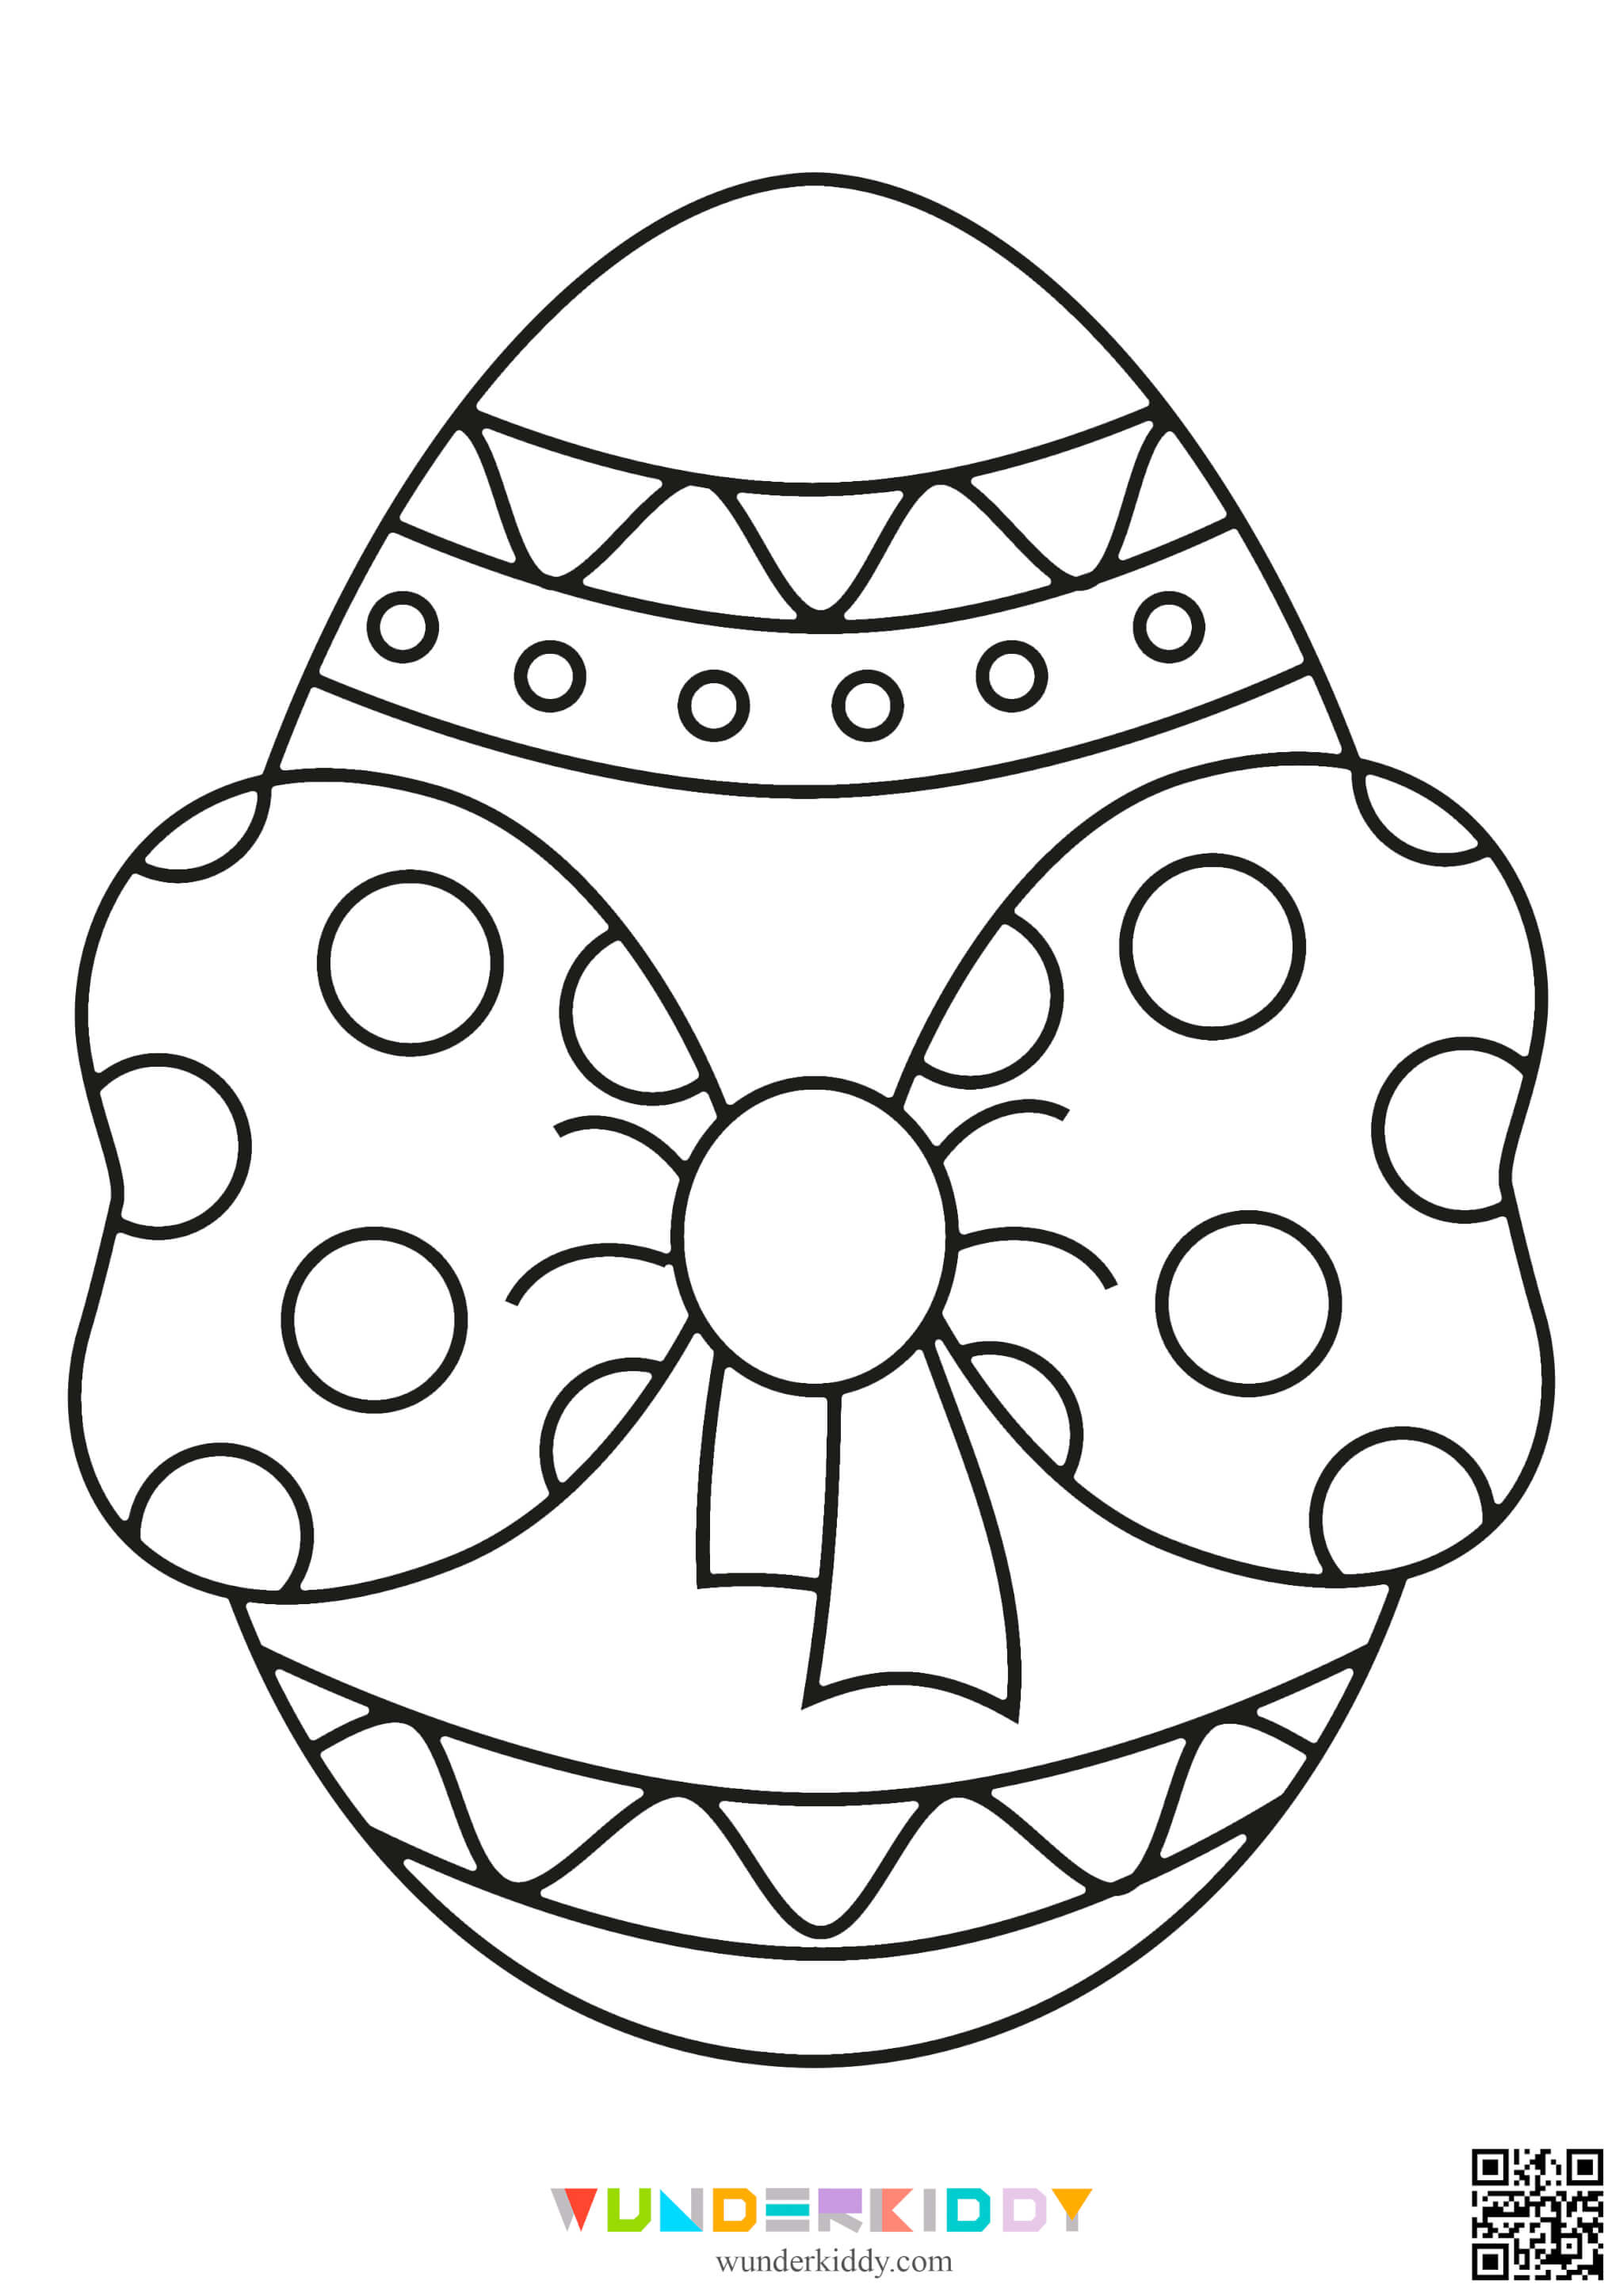 Розмальовки «Великодні яйця» для дітей - Зображення 11